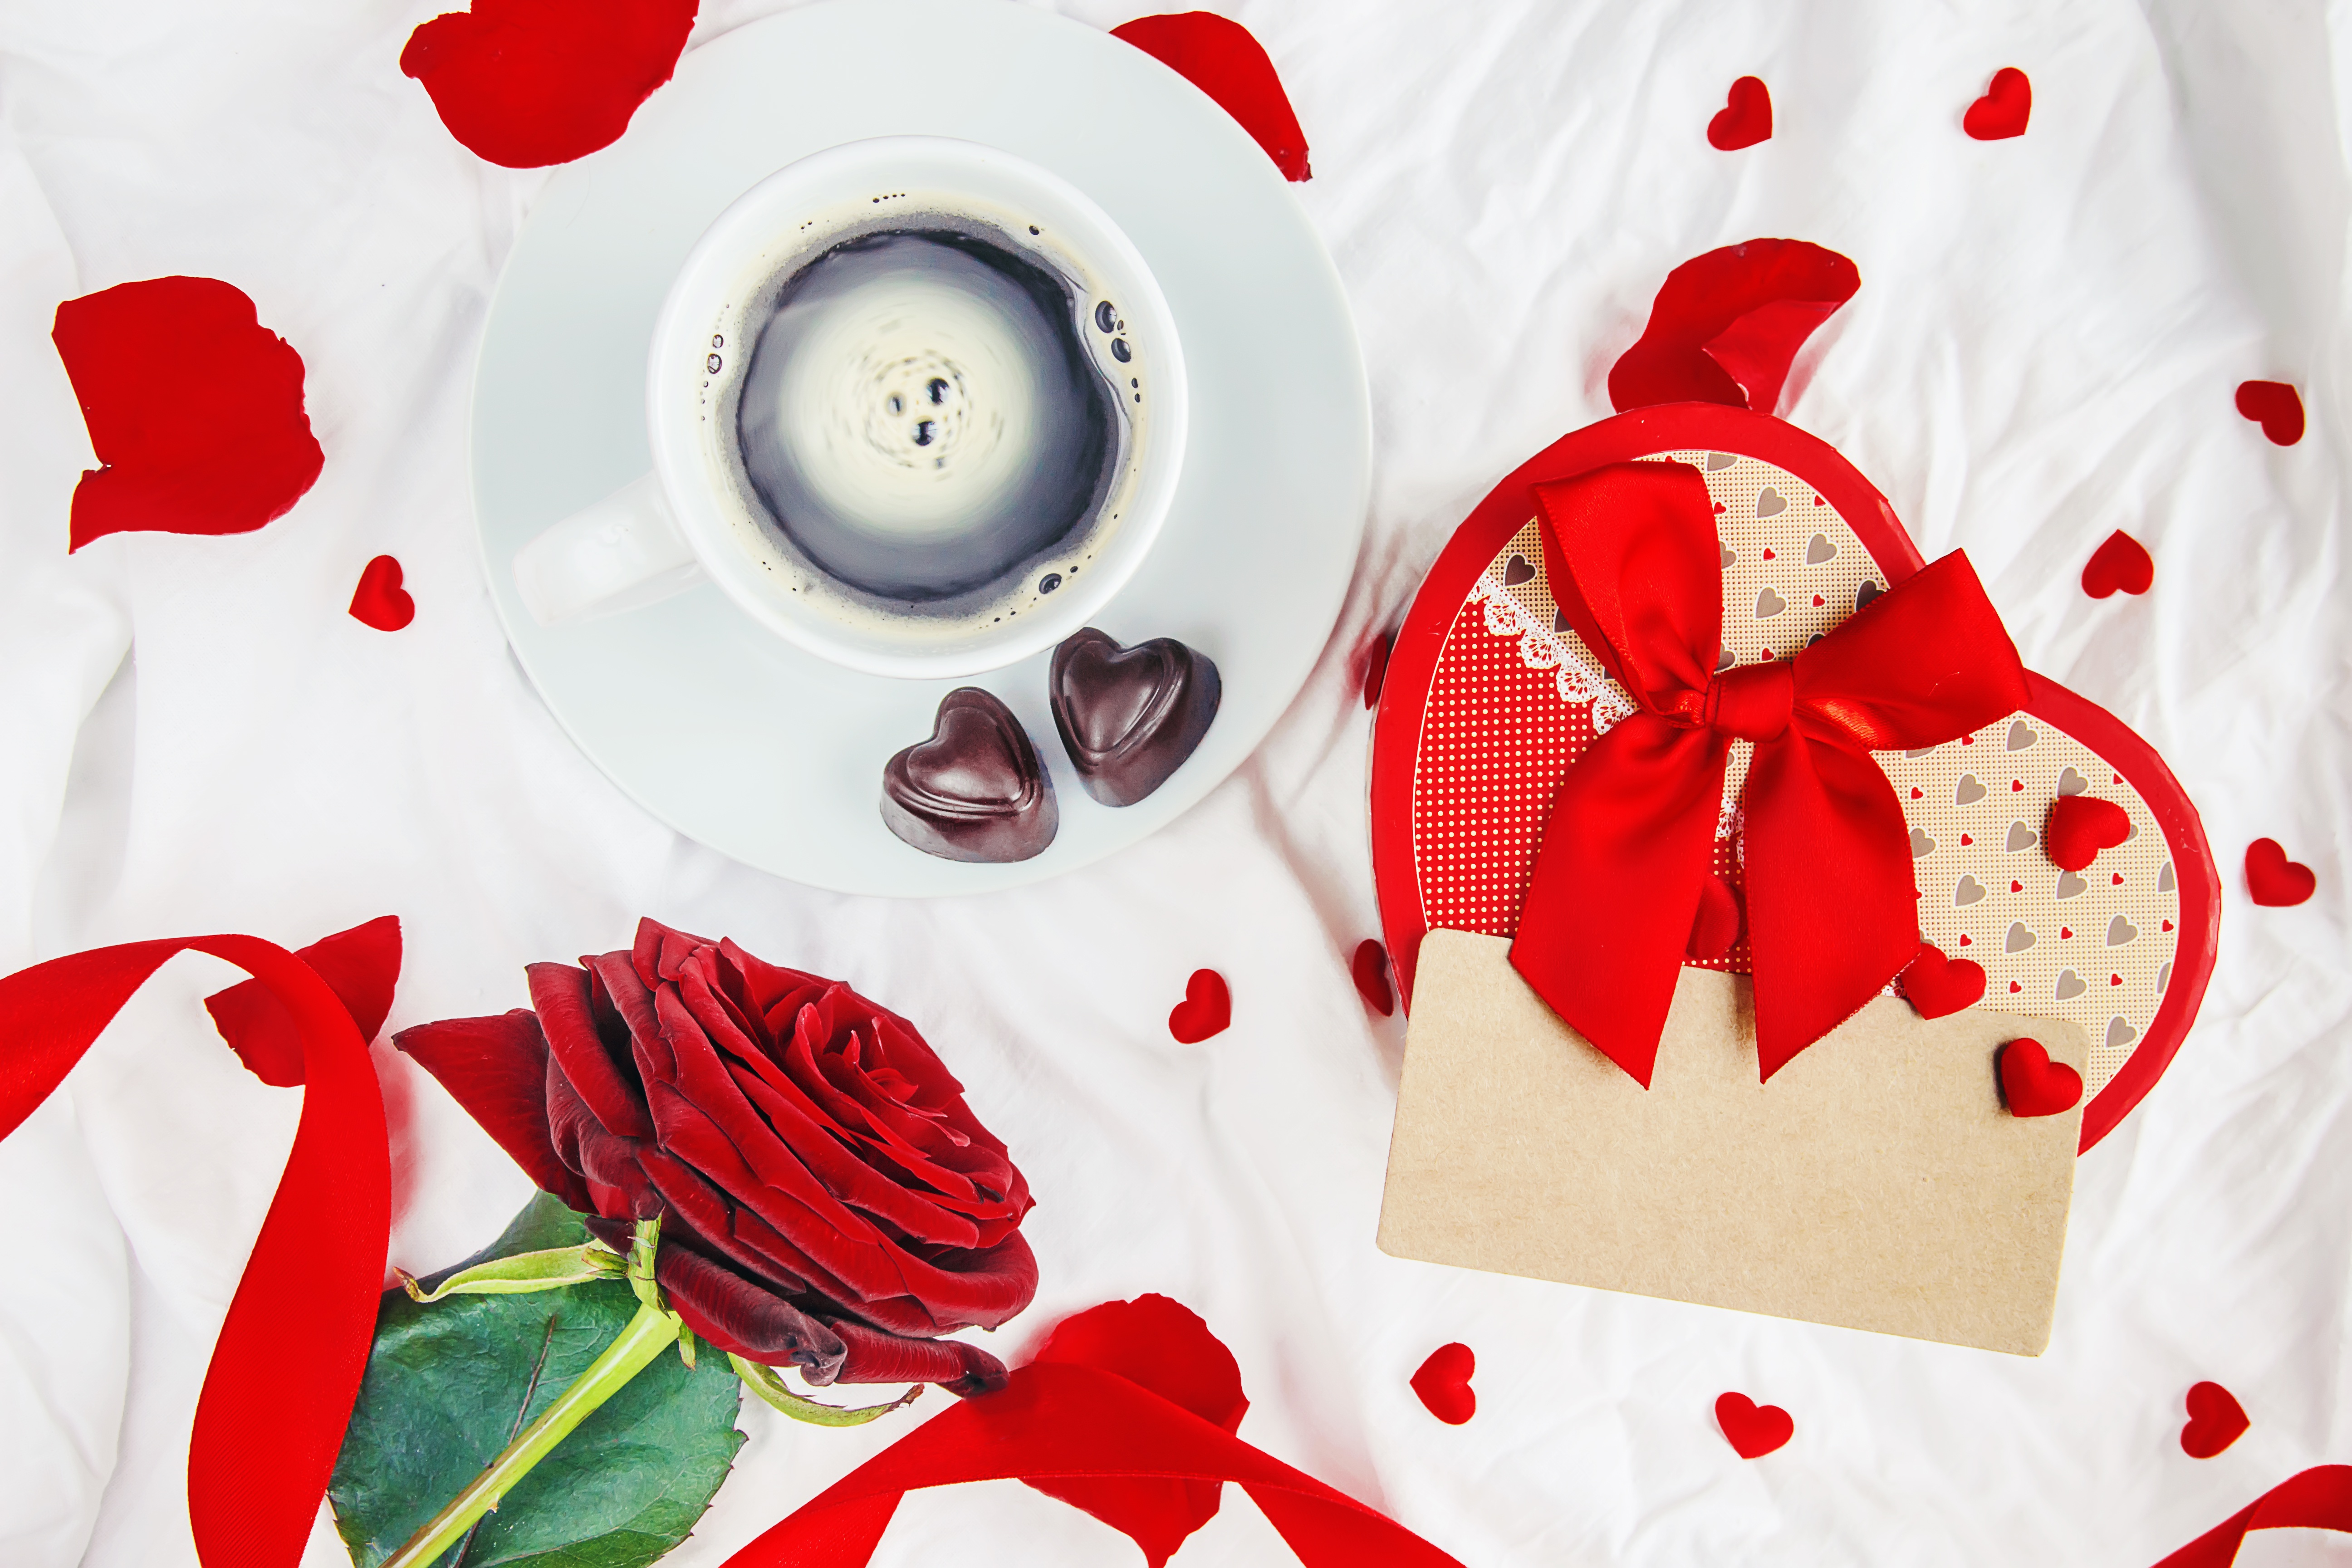 Скачать обои бесплатно Кофе, Натюрморт, Роза, Подарки, День Святого Валентина, Праздничные, Красный Цветок картинка на рабочий стол ПК